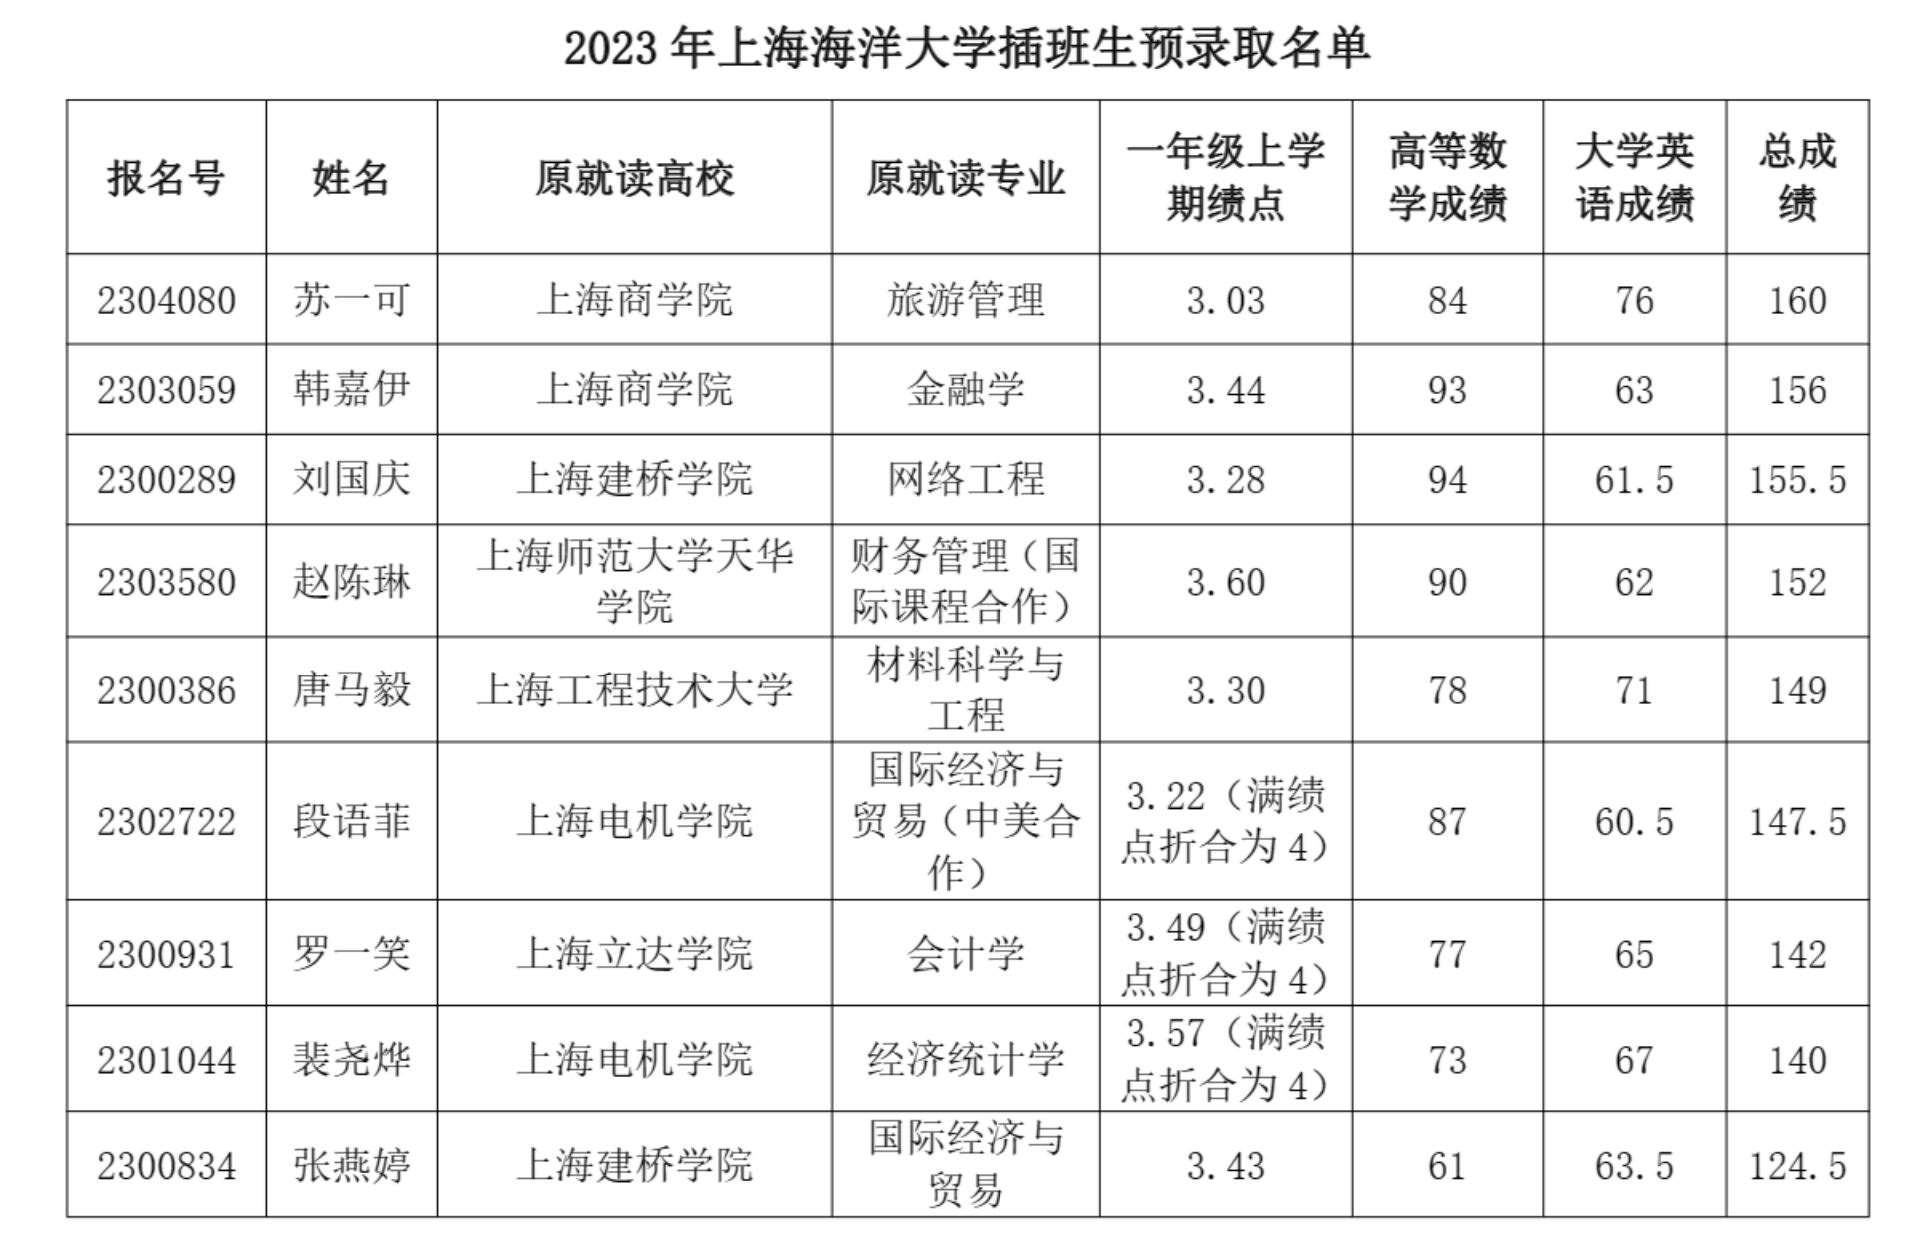 2023年上海海洋大学插班生预录取分数线及名单公示